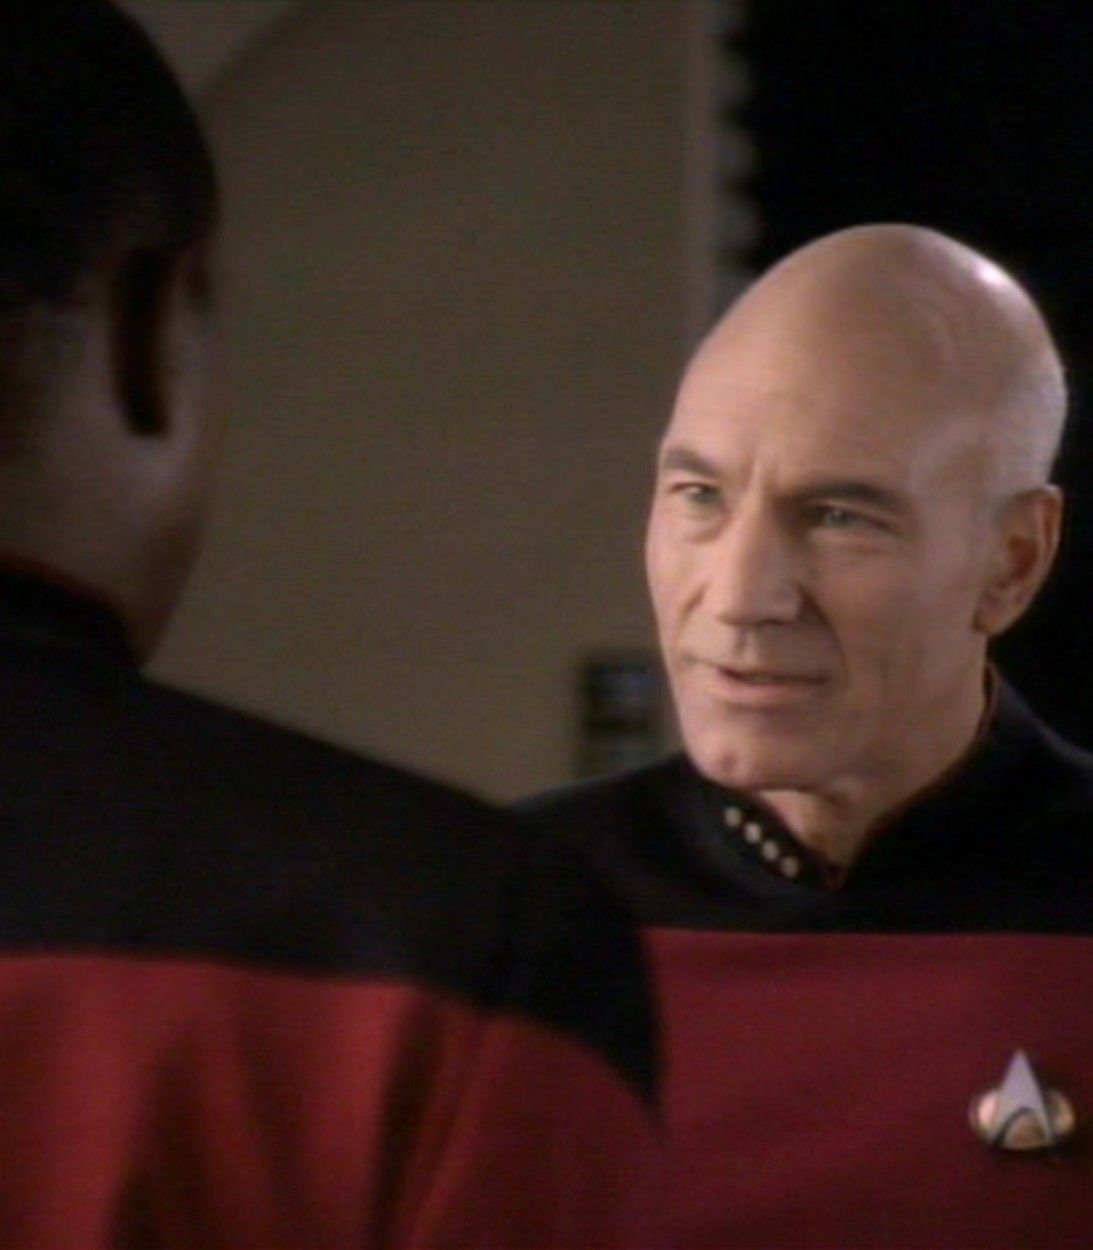 Star Trek Deep Space 9 Jean-Luc Picard pic vertical